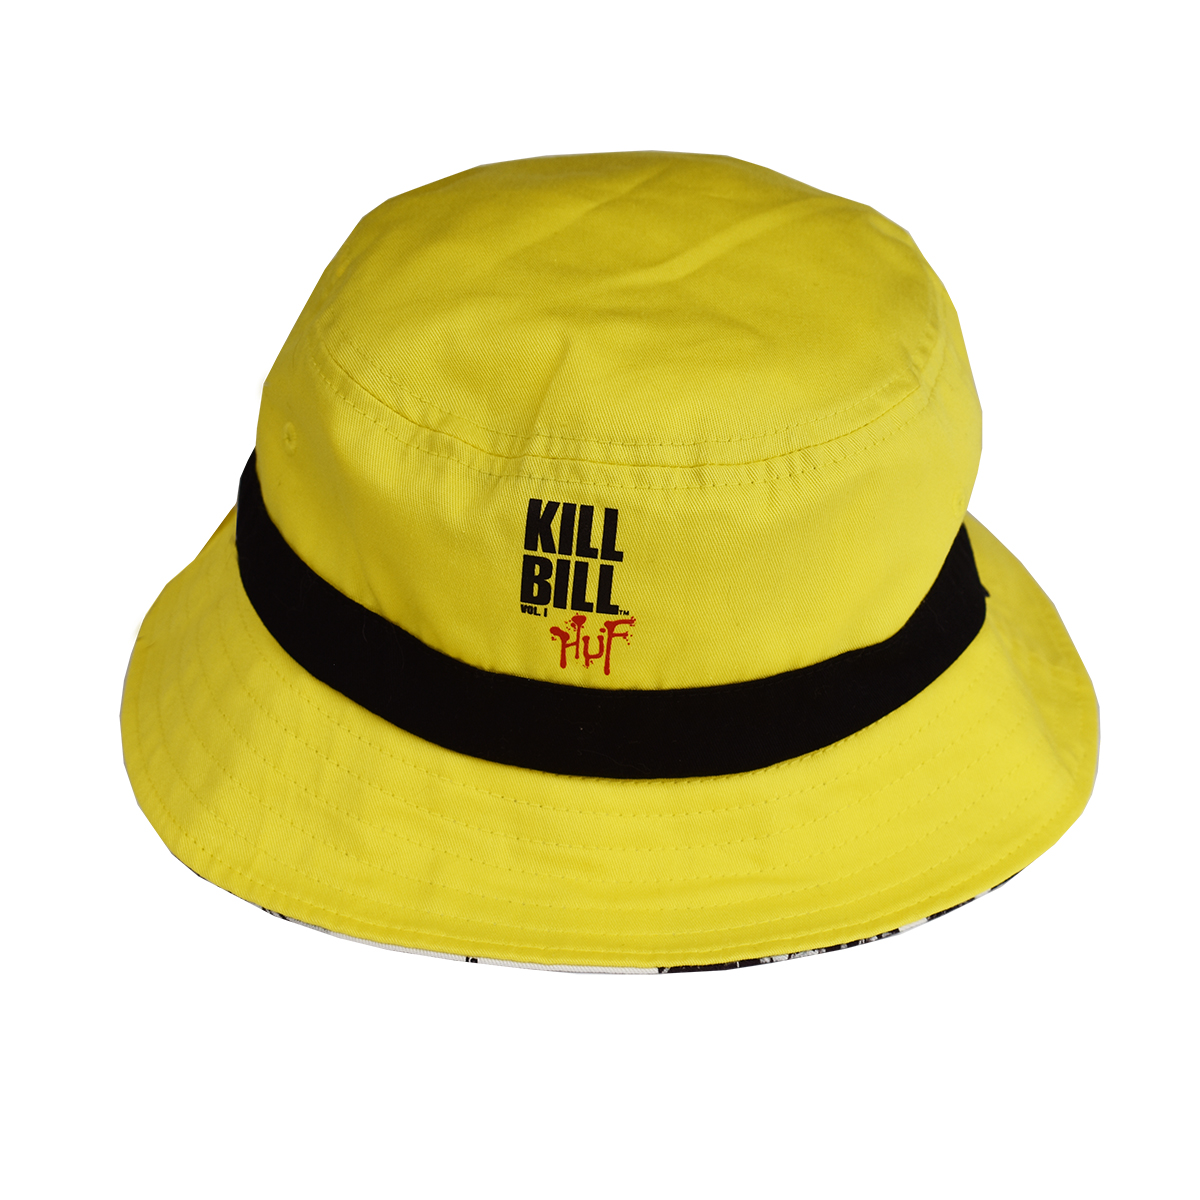 Bucket Huf x Kill Bill Reversible